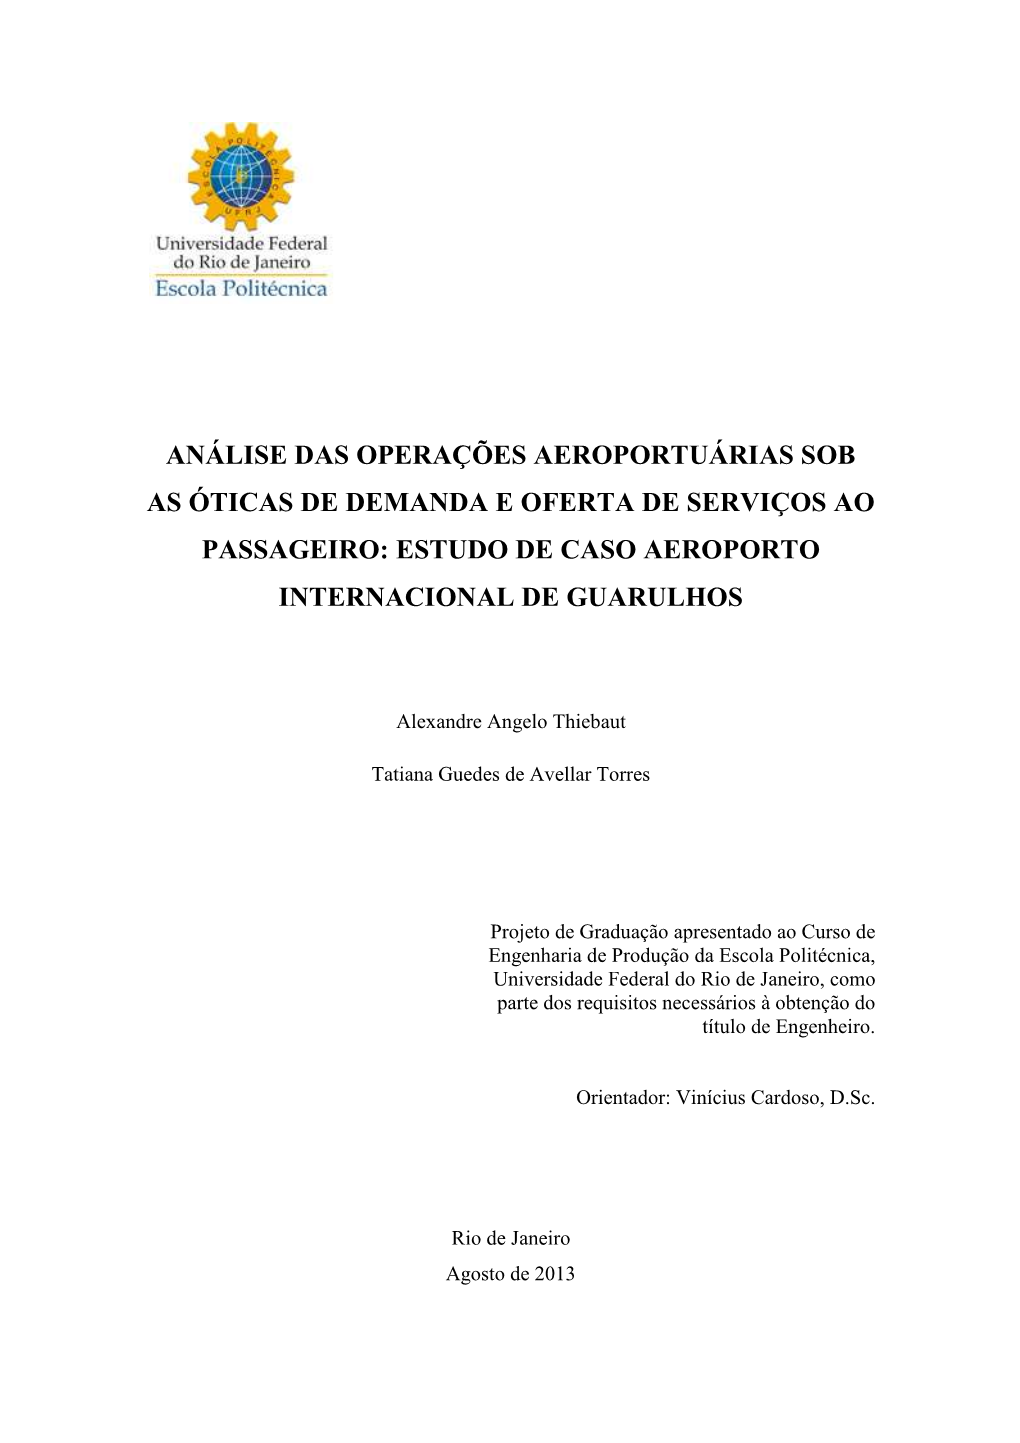 Análise Das Operações Aeroportuárias Sob As Óticas De Demanda E Oferta De Serviços Ao Passageiro: Estudo De Caso Aeroporto Internacional De Guarulhos